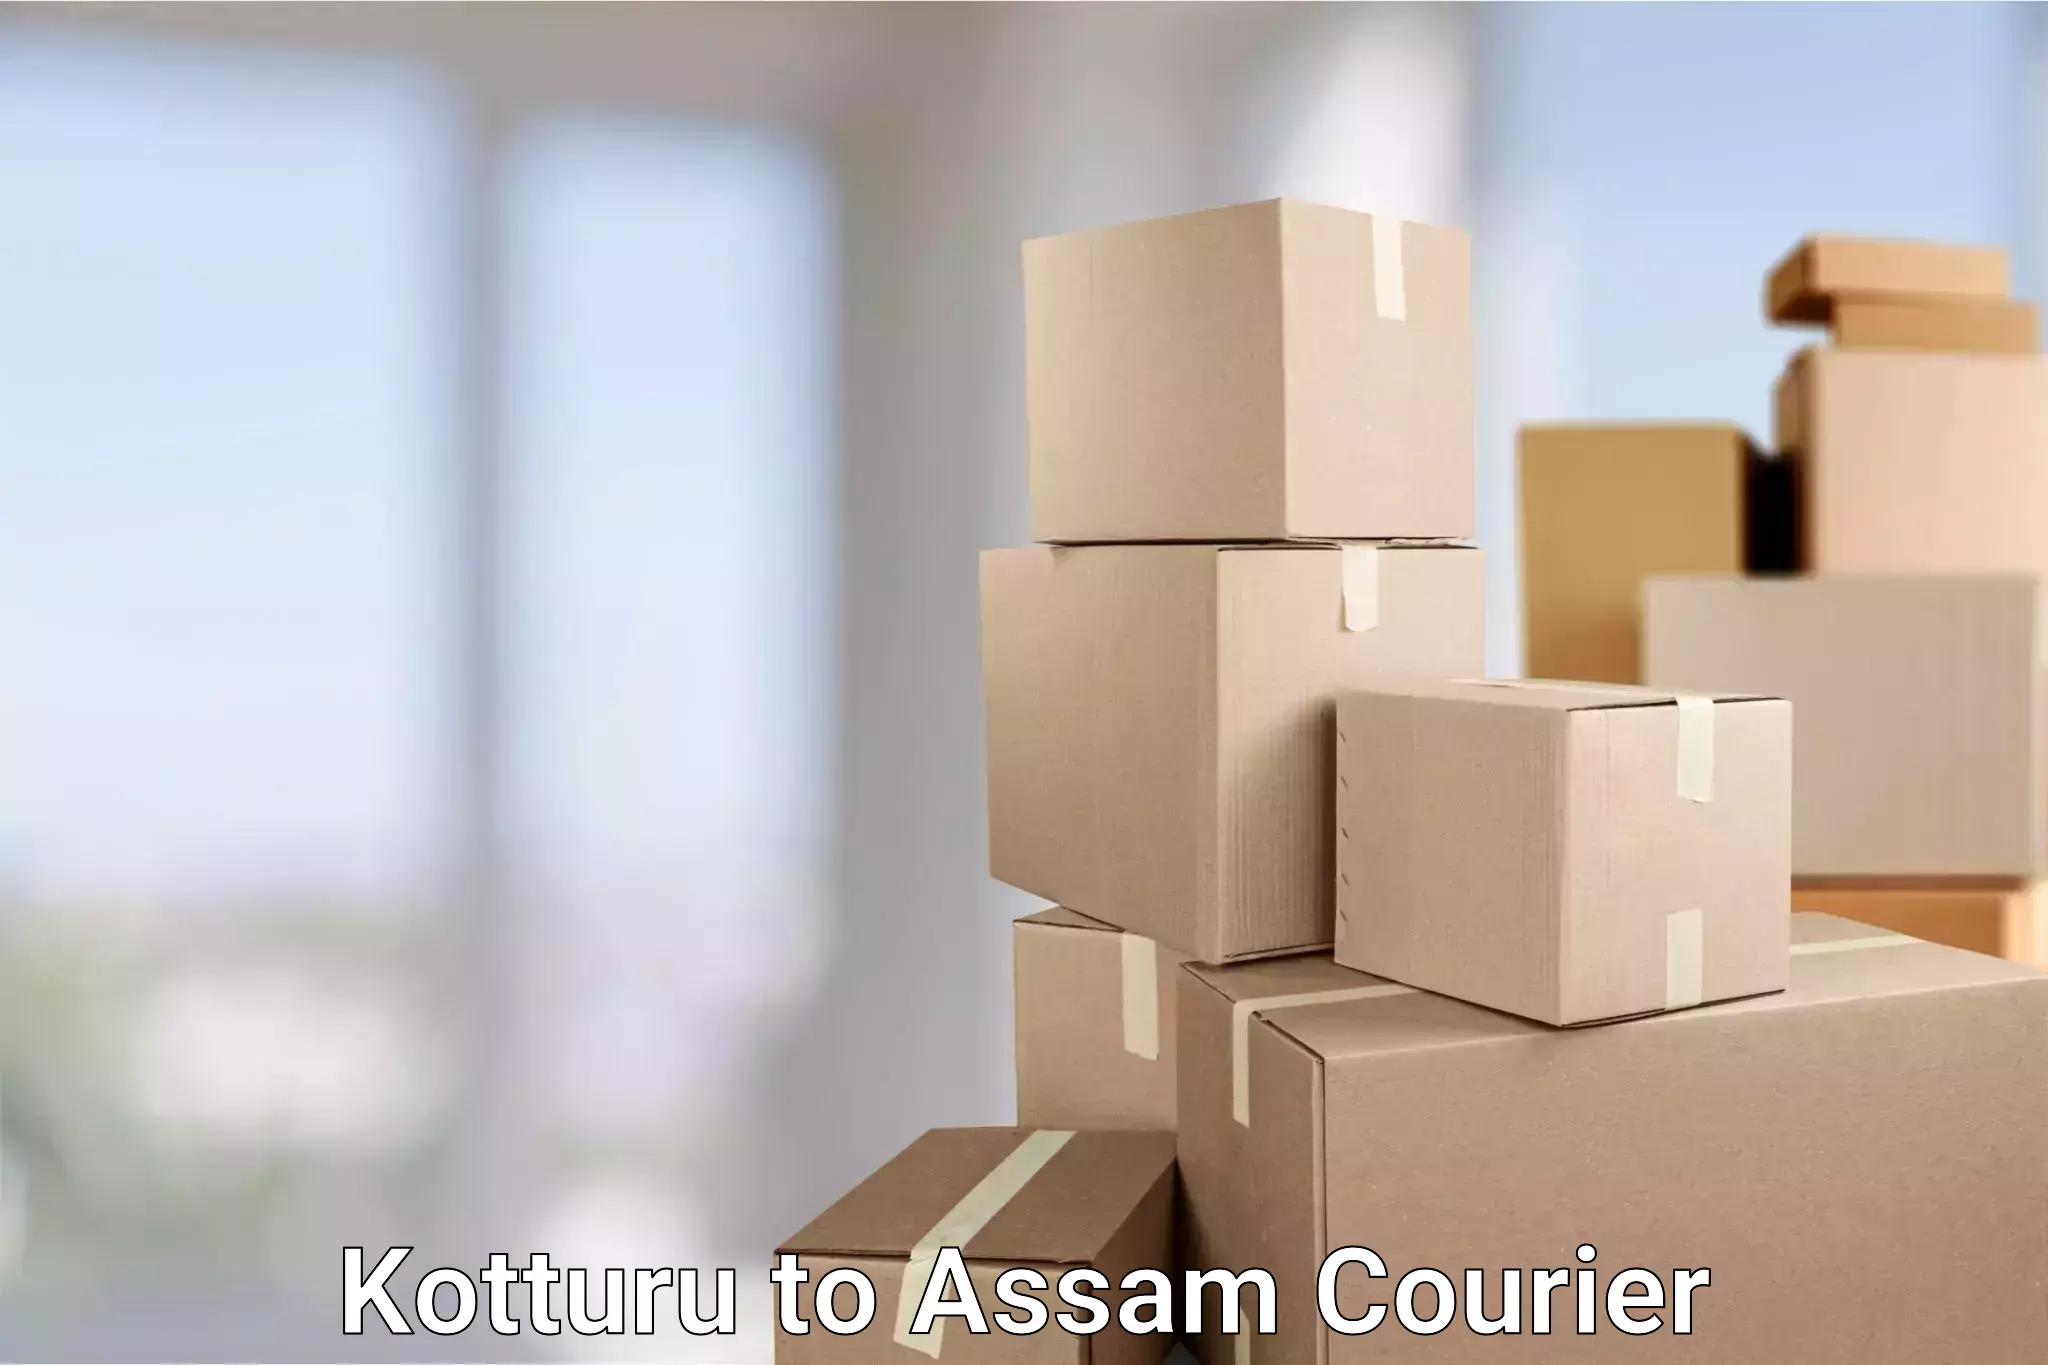 Cash on delivery service Kotturu to Lala Assam